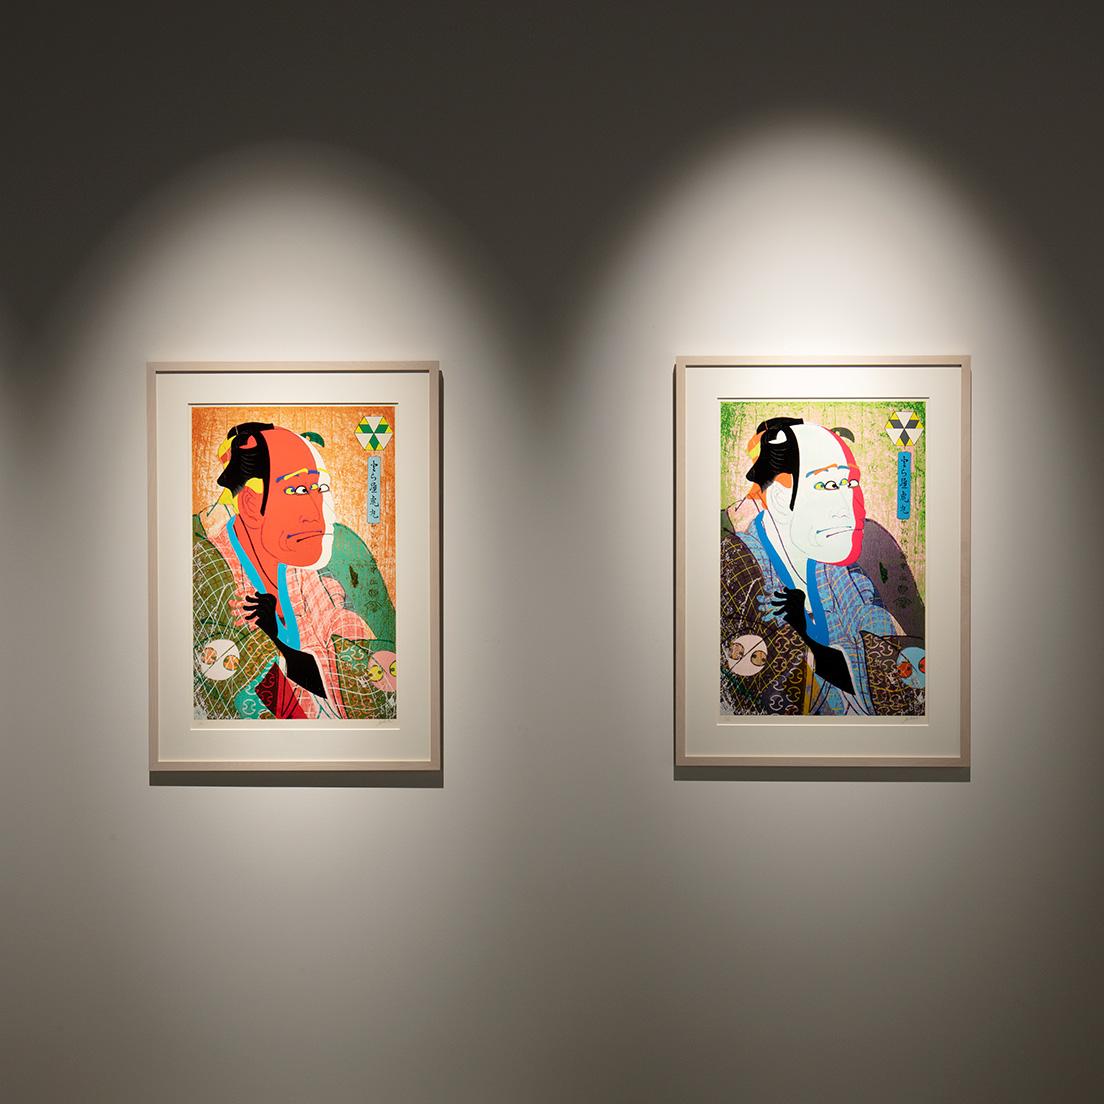 東洲斎写楽《「とら屋虎丸」二代目嵐龍蔵の奴なみ平》をモチーフにした油性木版画シリーズ。